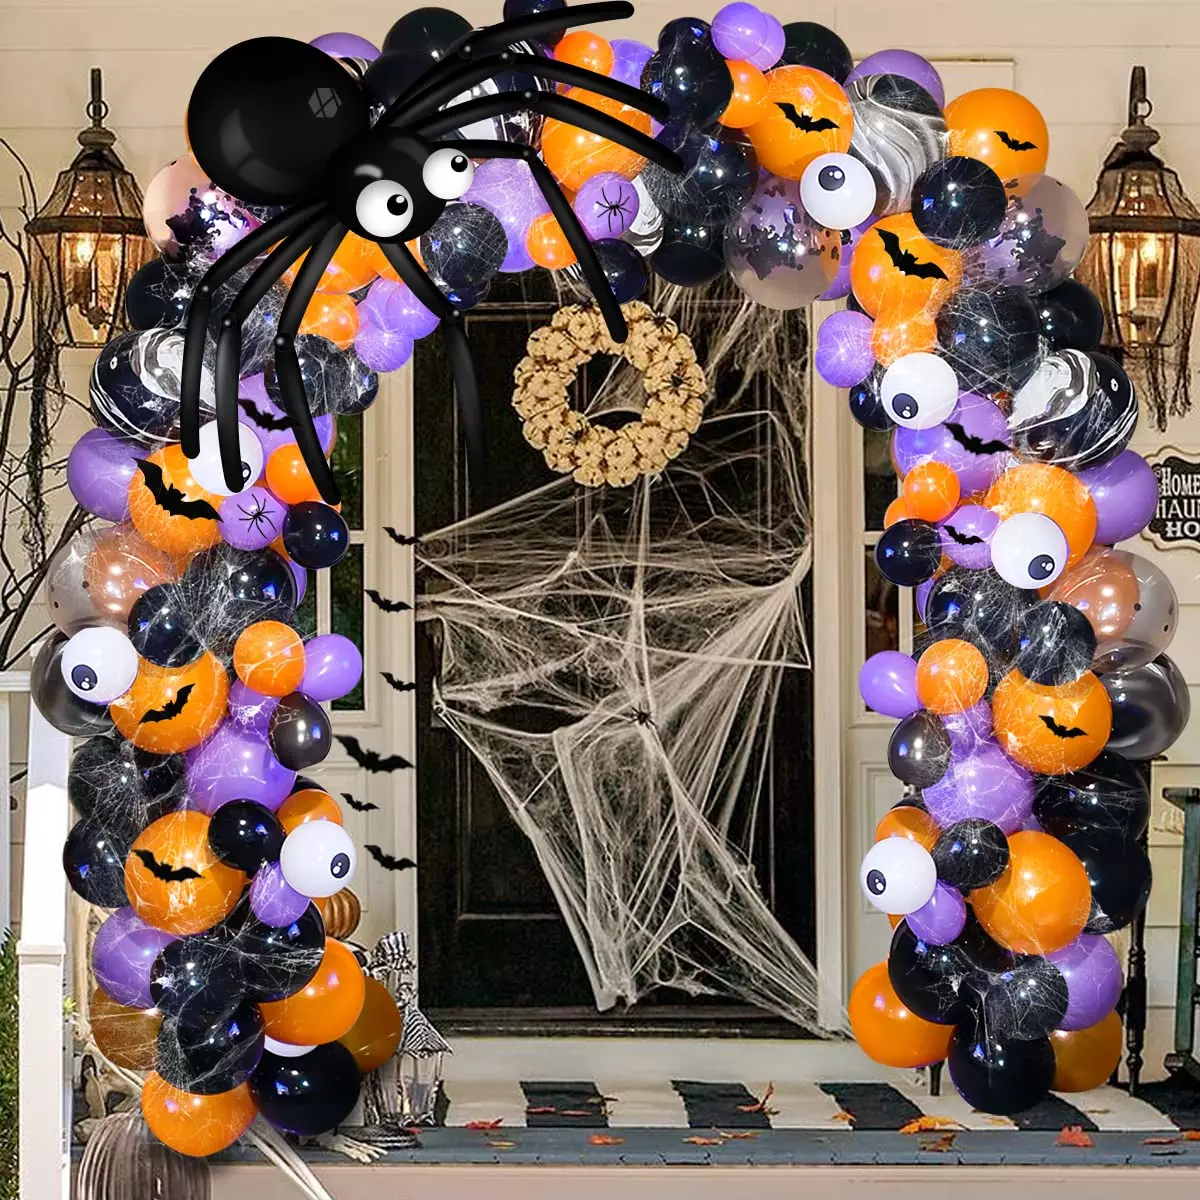 Halloween balloon decorations